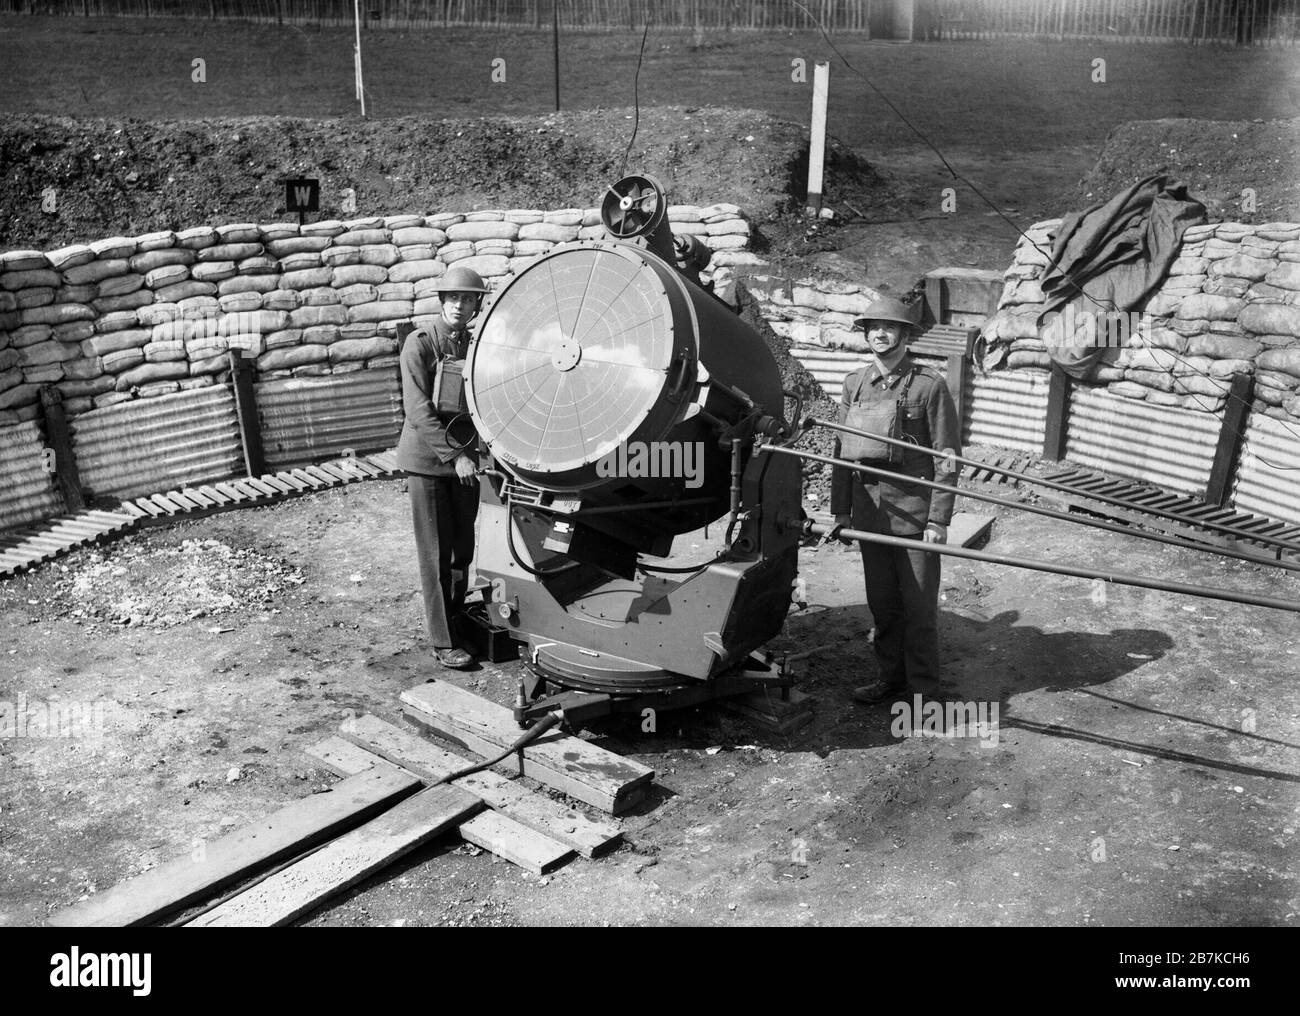 Un projecteur anti-aérien et l'équipage à l'Hôpital Royal de Chelsea à Londres, 17 avril 1940. Projecteur anti-aérien et l'équipage à l'Hôpital Royal de Chelsea à Londres, 17 avril 1940. C'est le modèle de 90 mm. Le tube en haut de la lumière est un ventilateur qui refroidit l'intérieur. Banque D'Images